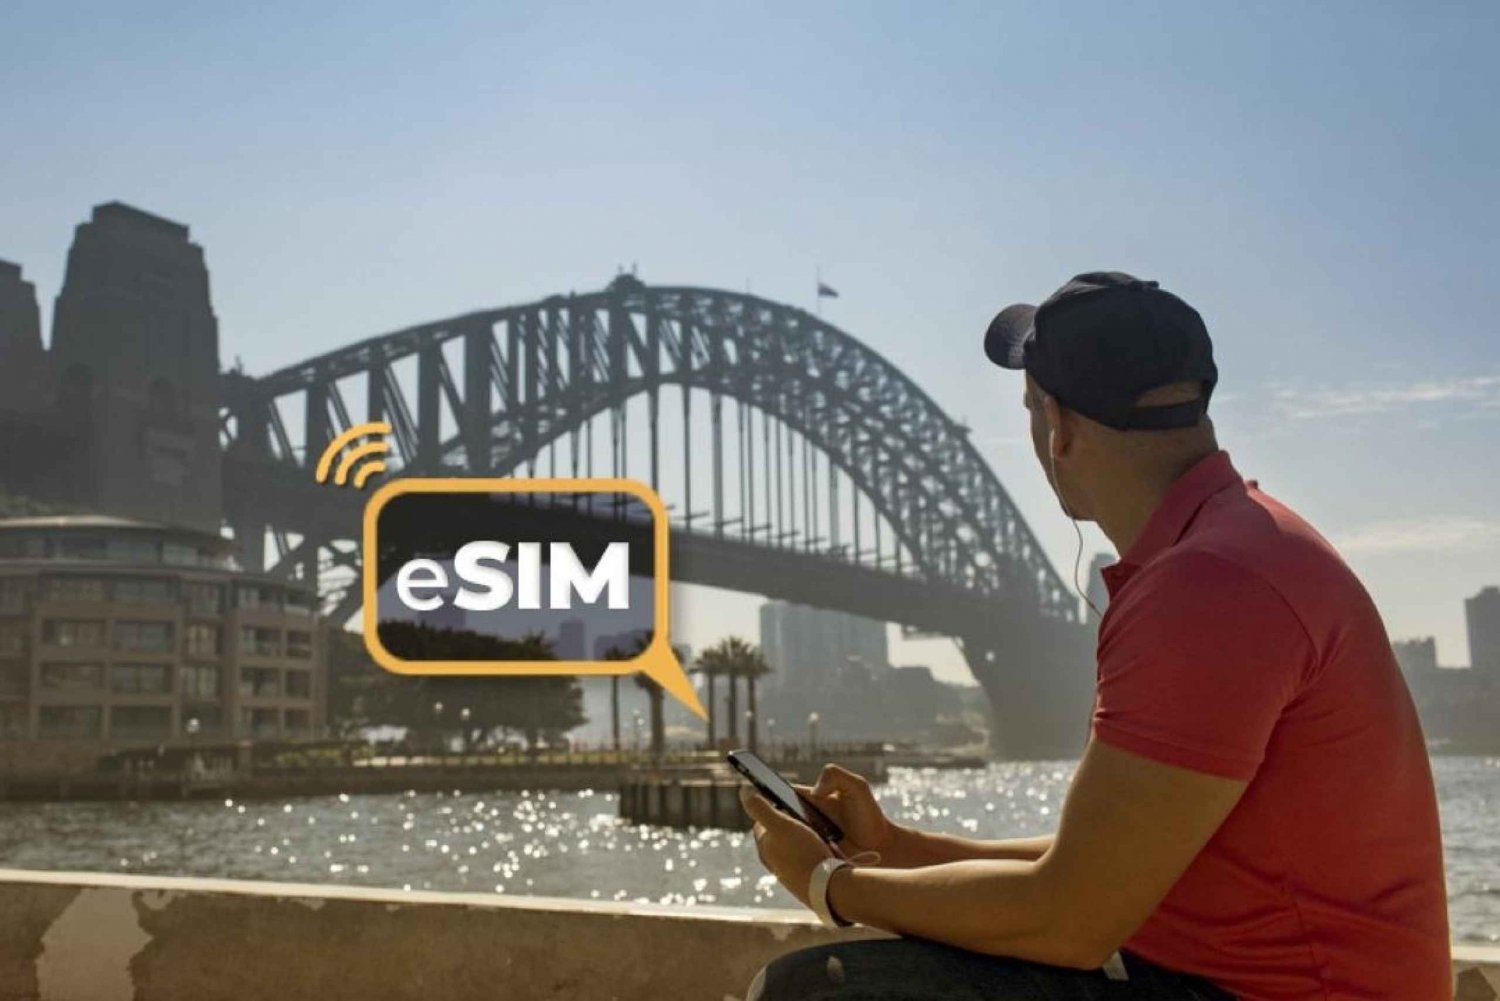 Sydney ja Australia: eSIM-mobiilidatan avulla verkkovierailu Internetissä